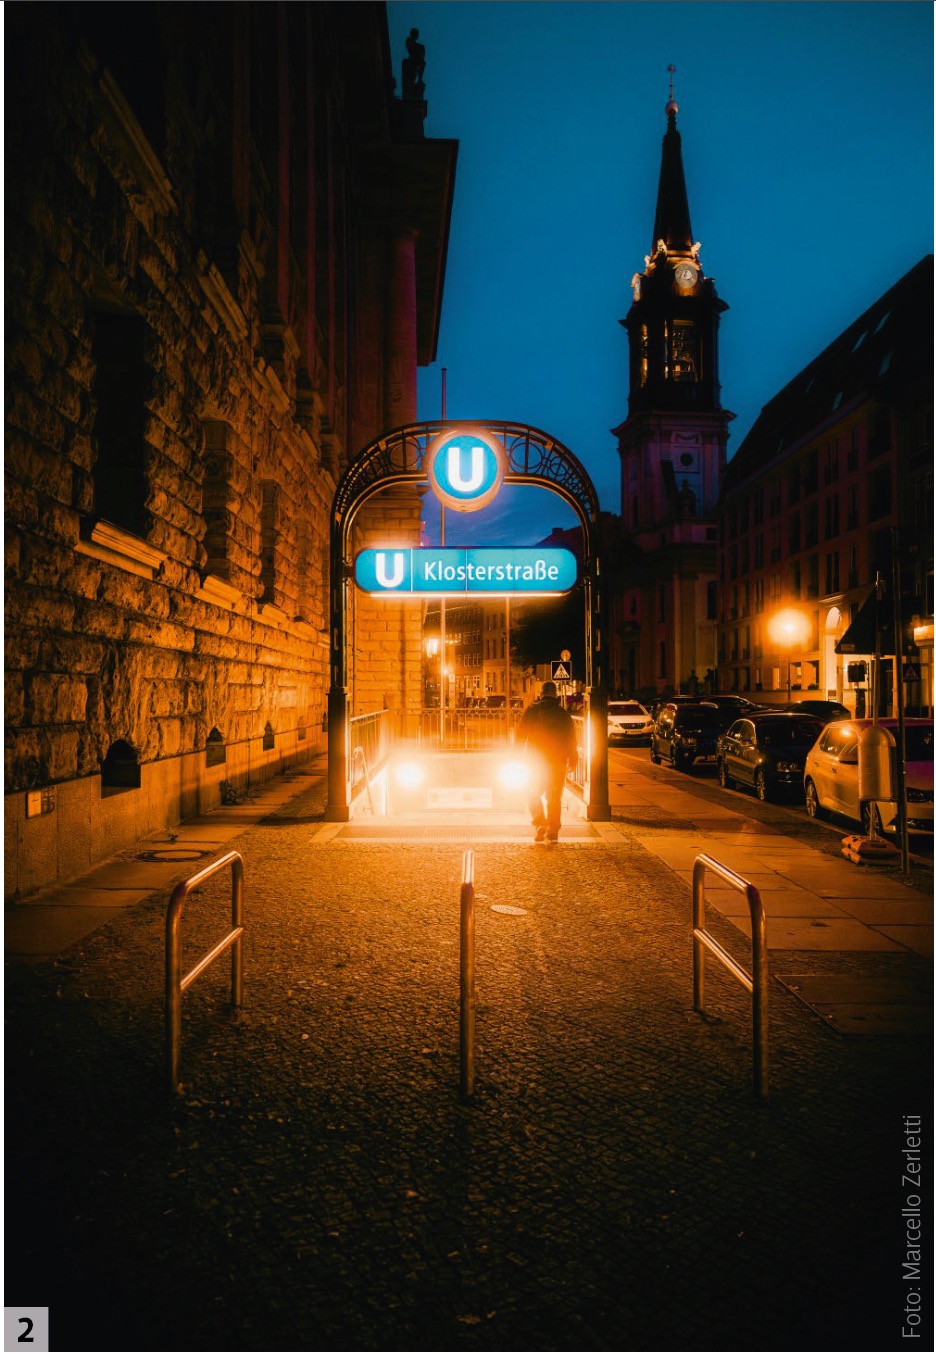 Der Einsatz eines Mist-Filters erzeugt diffuse Halos um die Lichter am U-Bahn-Eingang. Interview mit einem Buch: Nachtfotografie